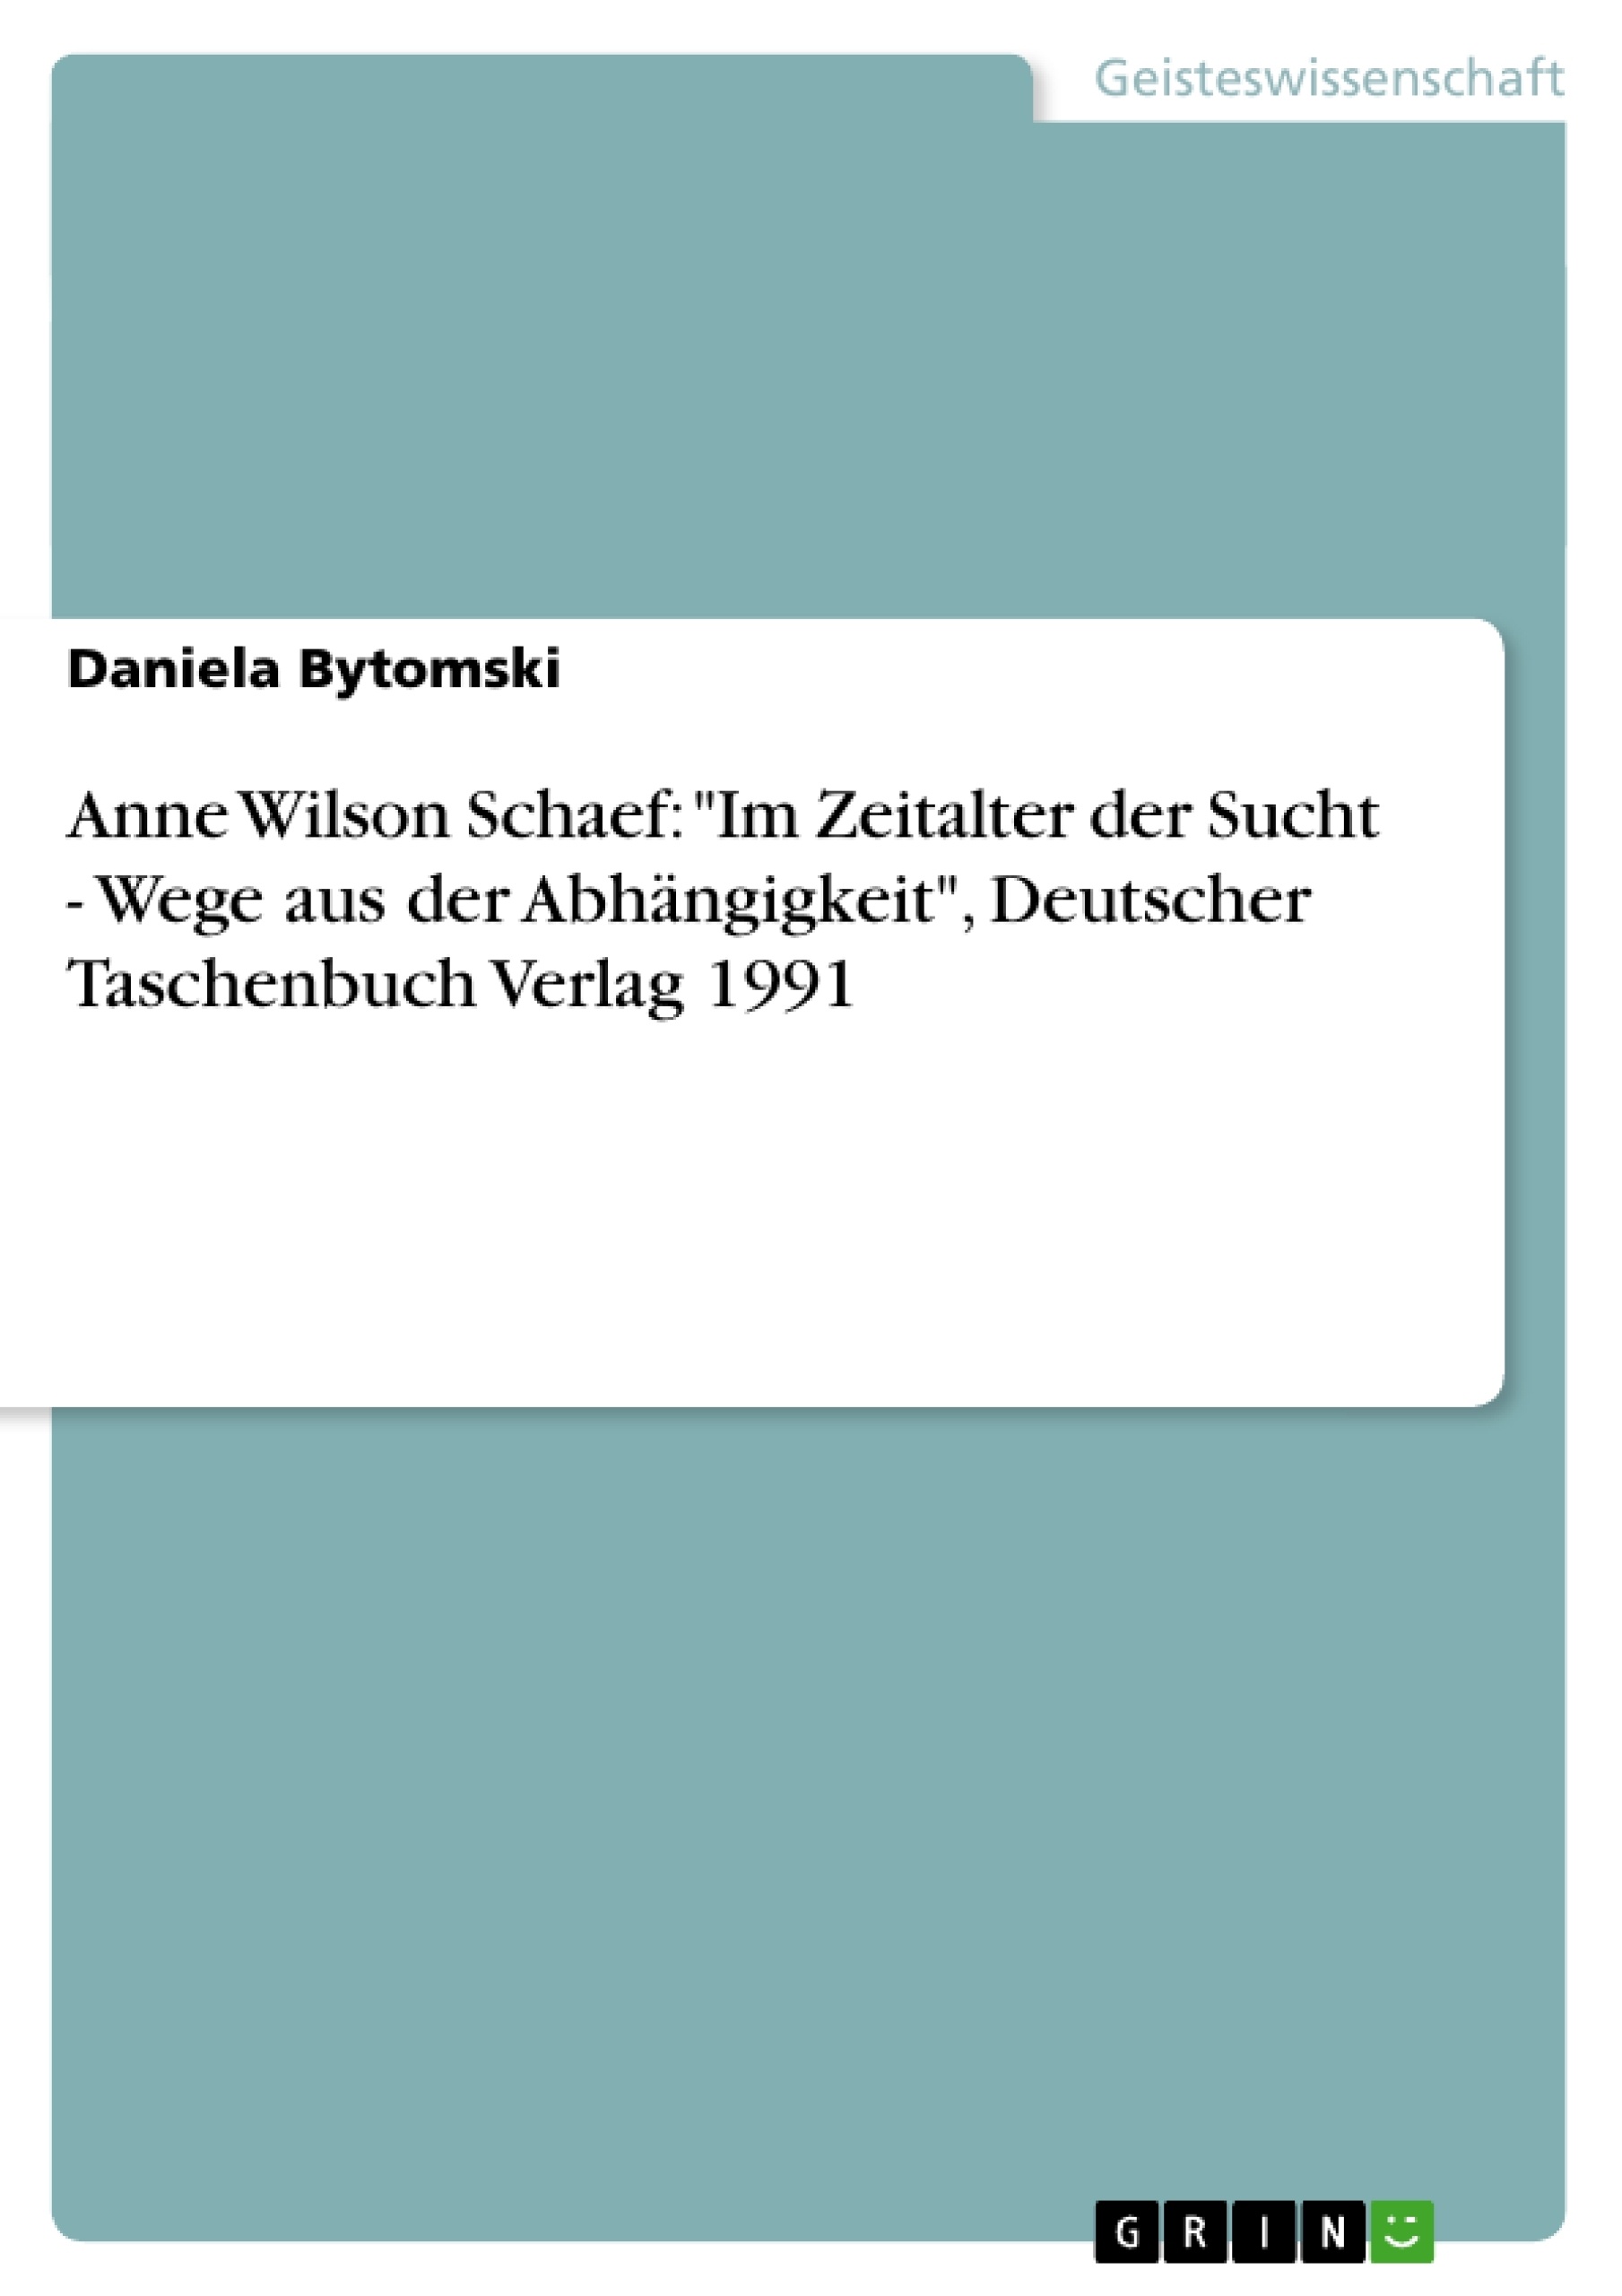 Título: Anne Wilson Schaef: "Im Zeitalter der Sucht - Wege aus der Abhängigkeit", Deutscher Taschenbuch Verlag 1991